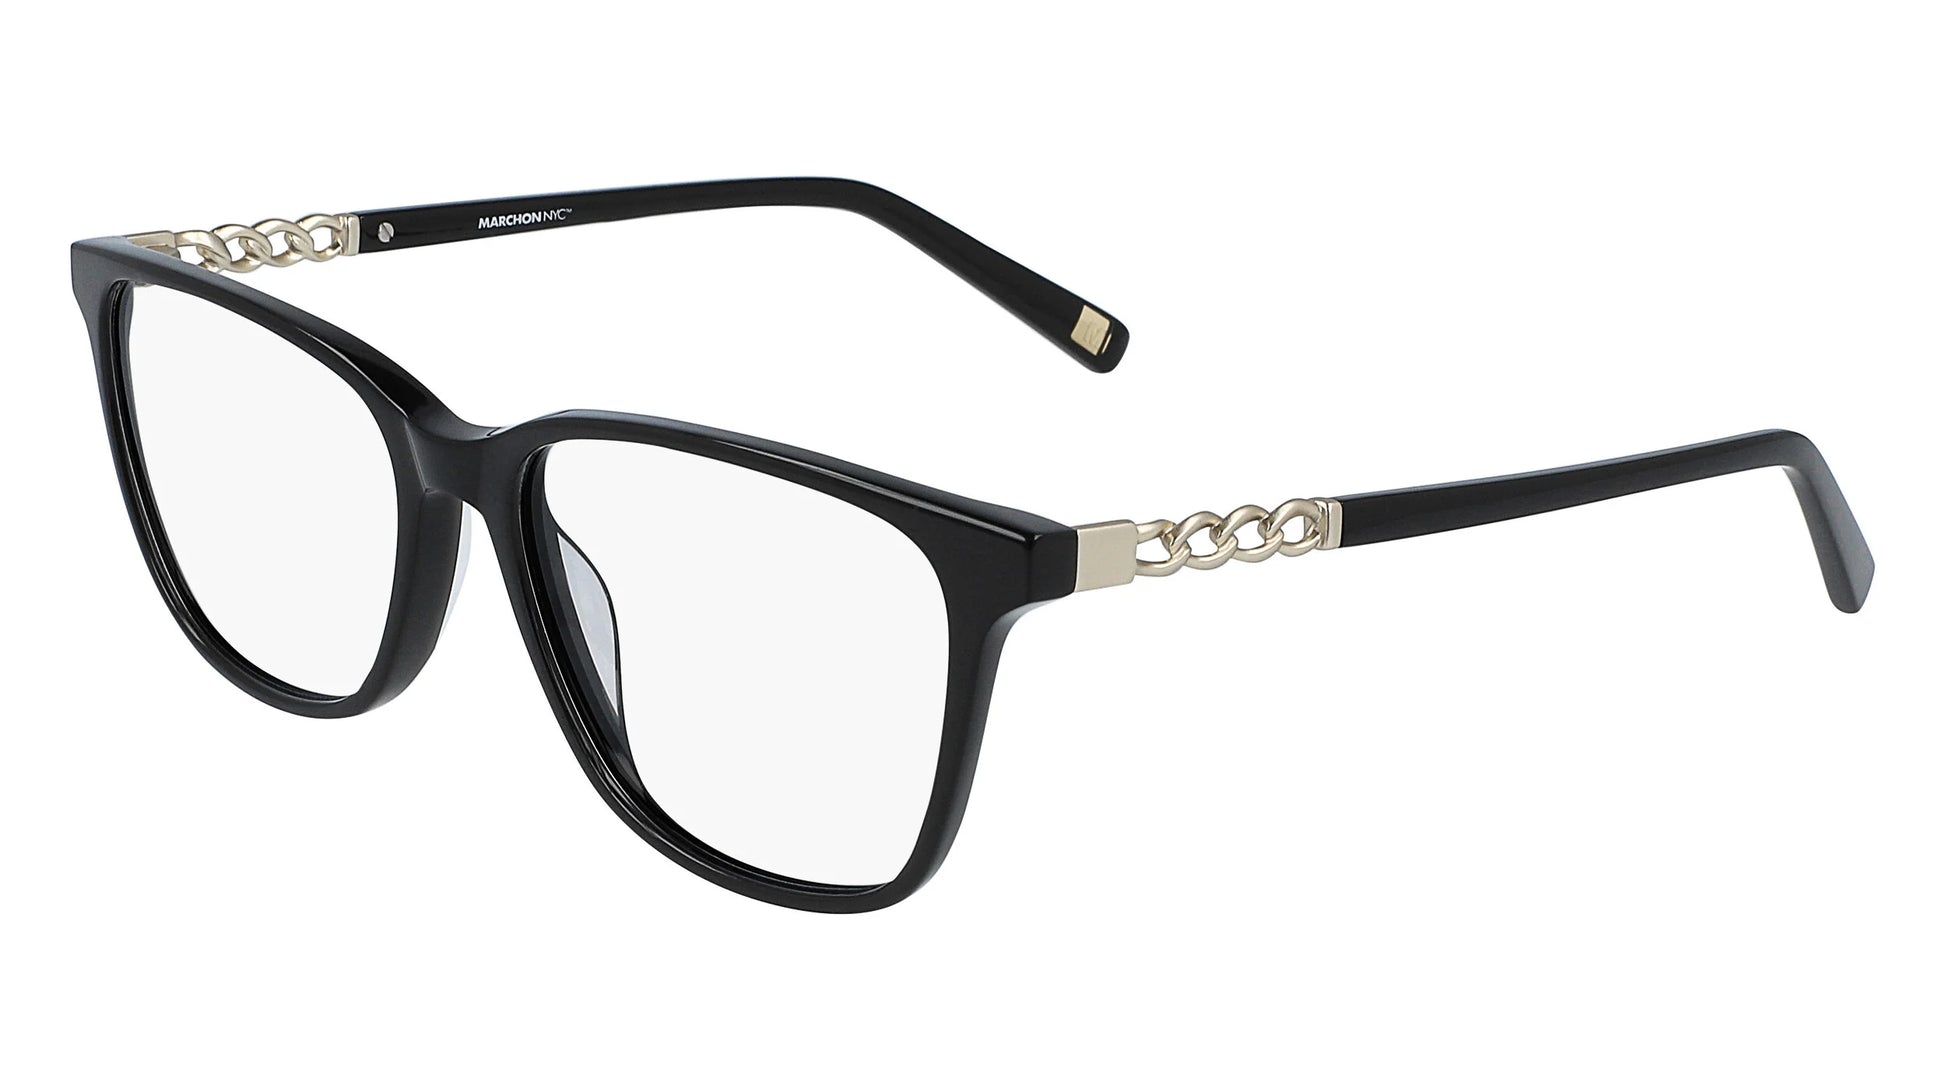 Marchon NYC M-5008 Eyeglasses Black